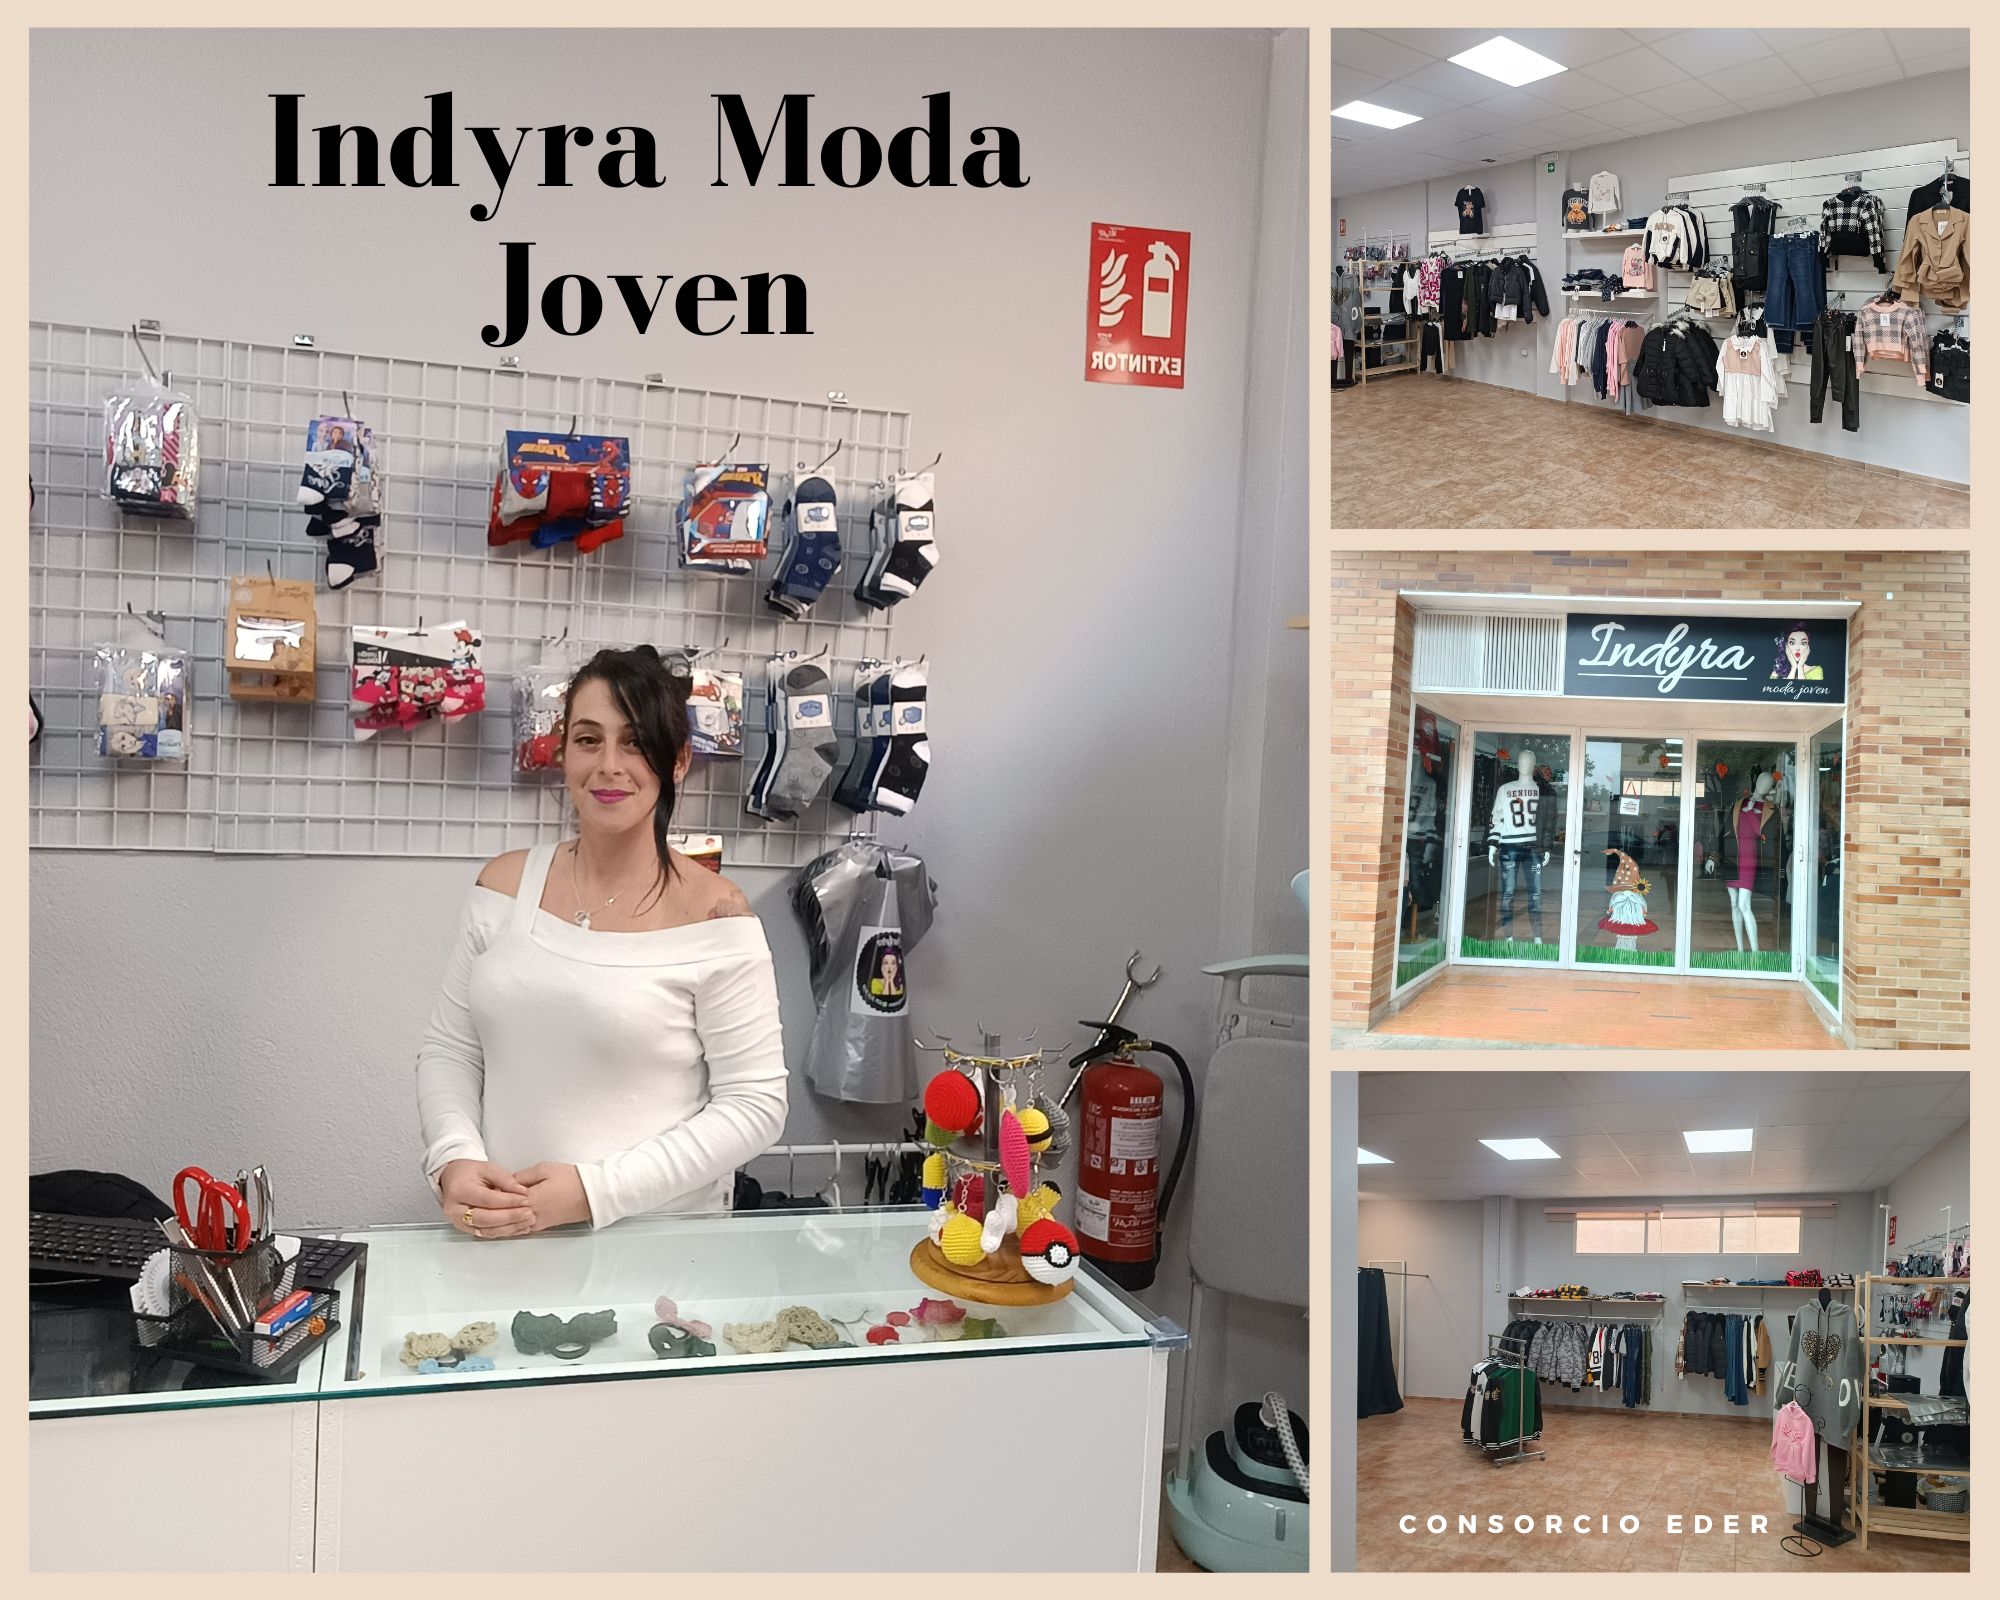 “Indyra Moda Joven”, nueva tienda de ropa de niñ @s y jóvenes situada en Tudela